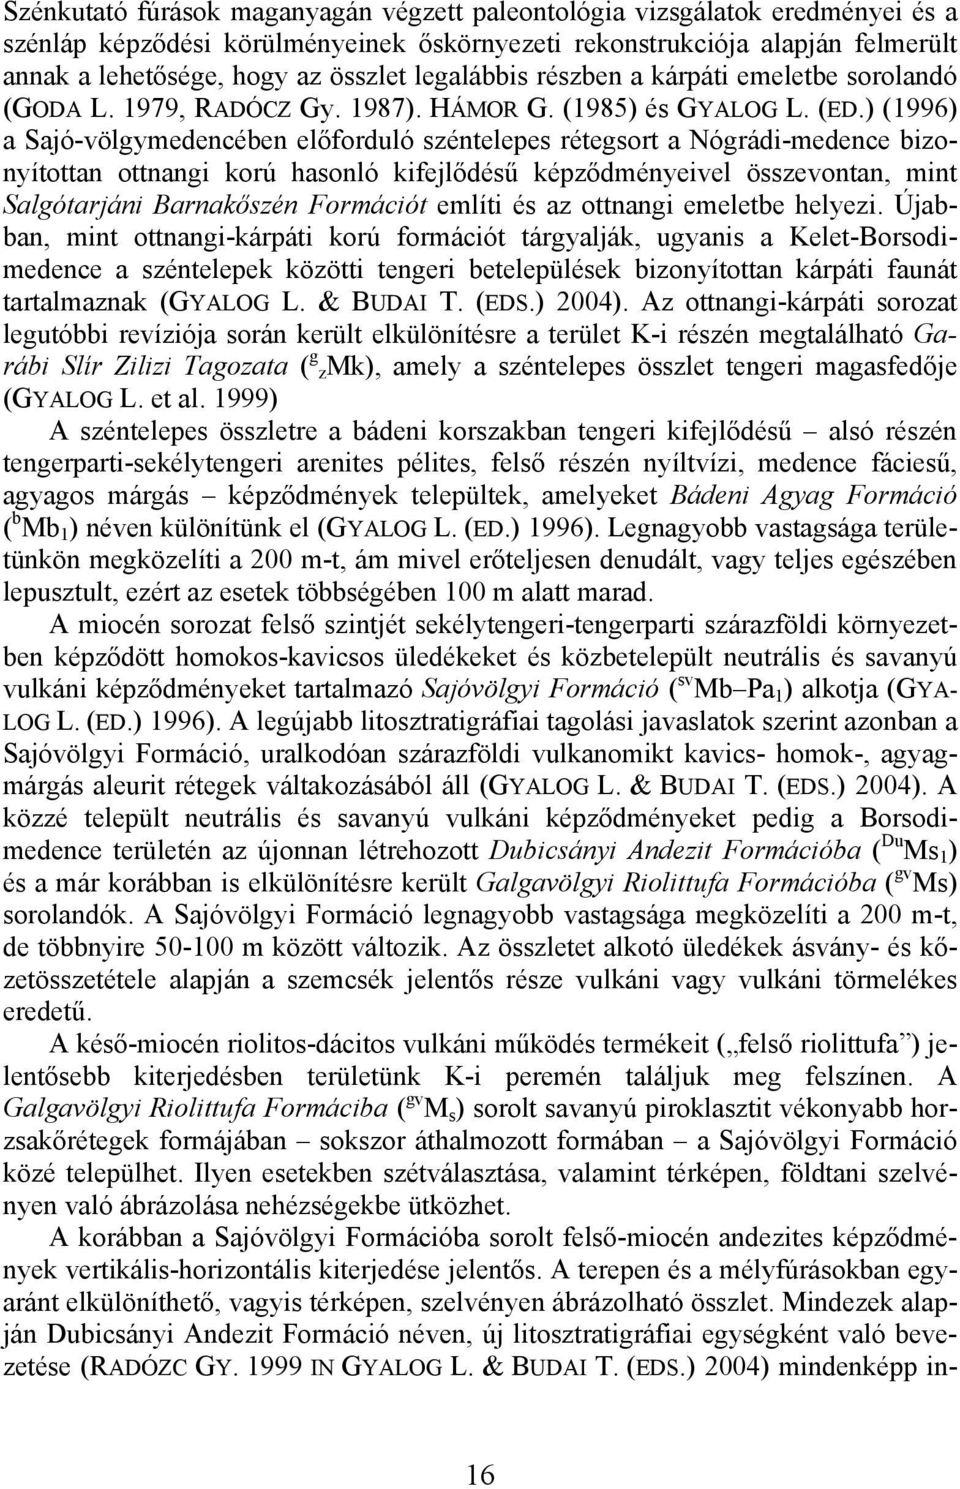 ) (1996) a Sajó-völgymedencében előforduló széntelepes rétegsort a Nógrádi-medence bizonyítottan ottnangi korú hasonló kifejlődésű képződményeivel összevontan, mint Salgótarjáni Barnakőszén Formációt